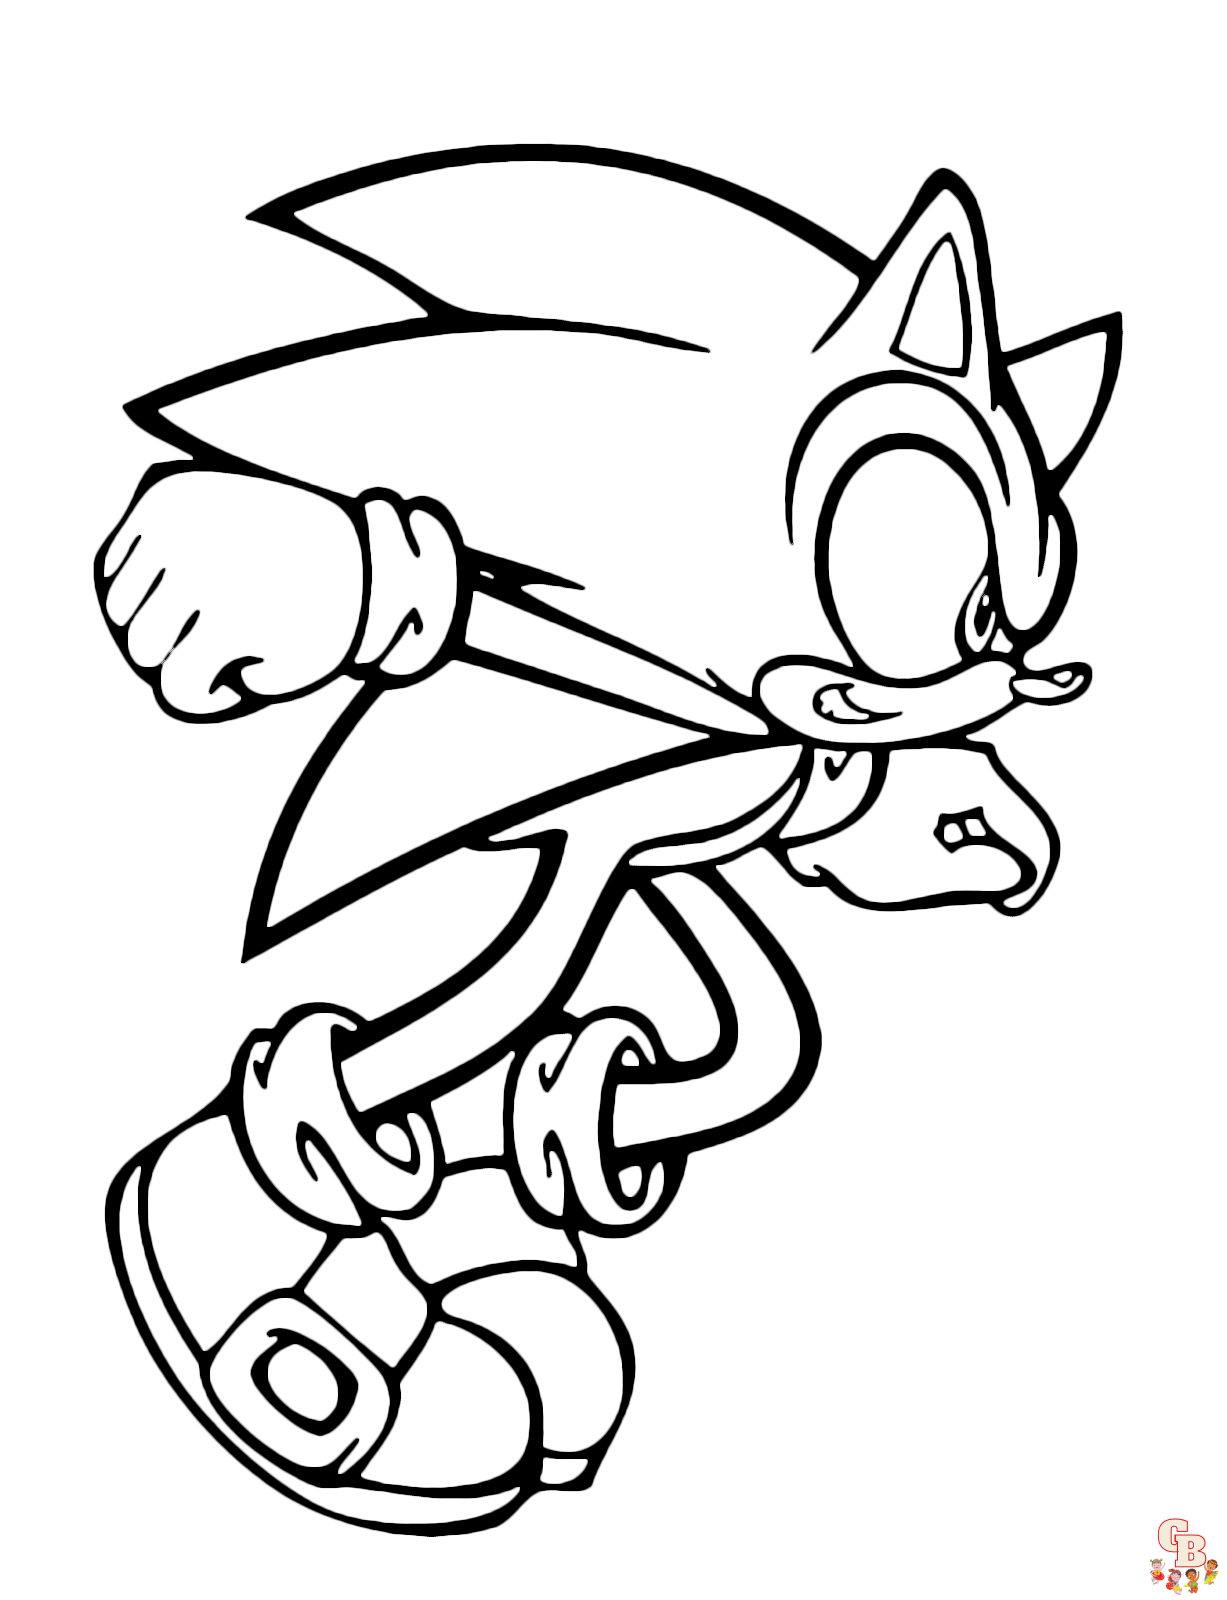 Sonic Boom jest gotowy do uwolnienia swojej prędkości ponaddźwiękowej